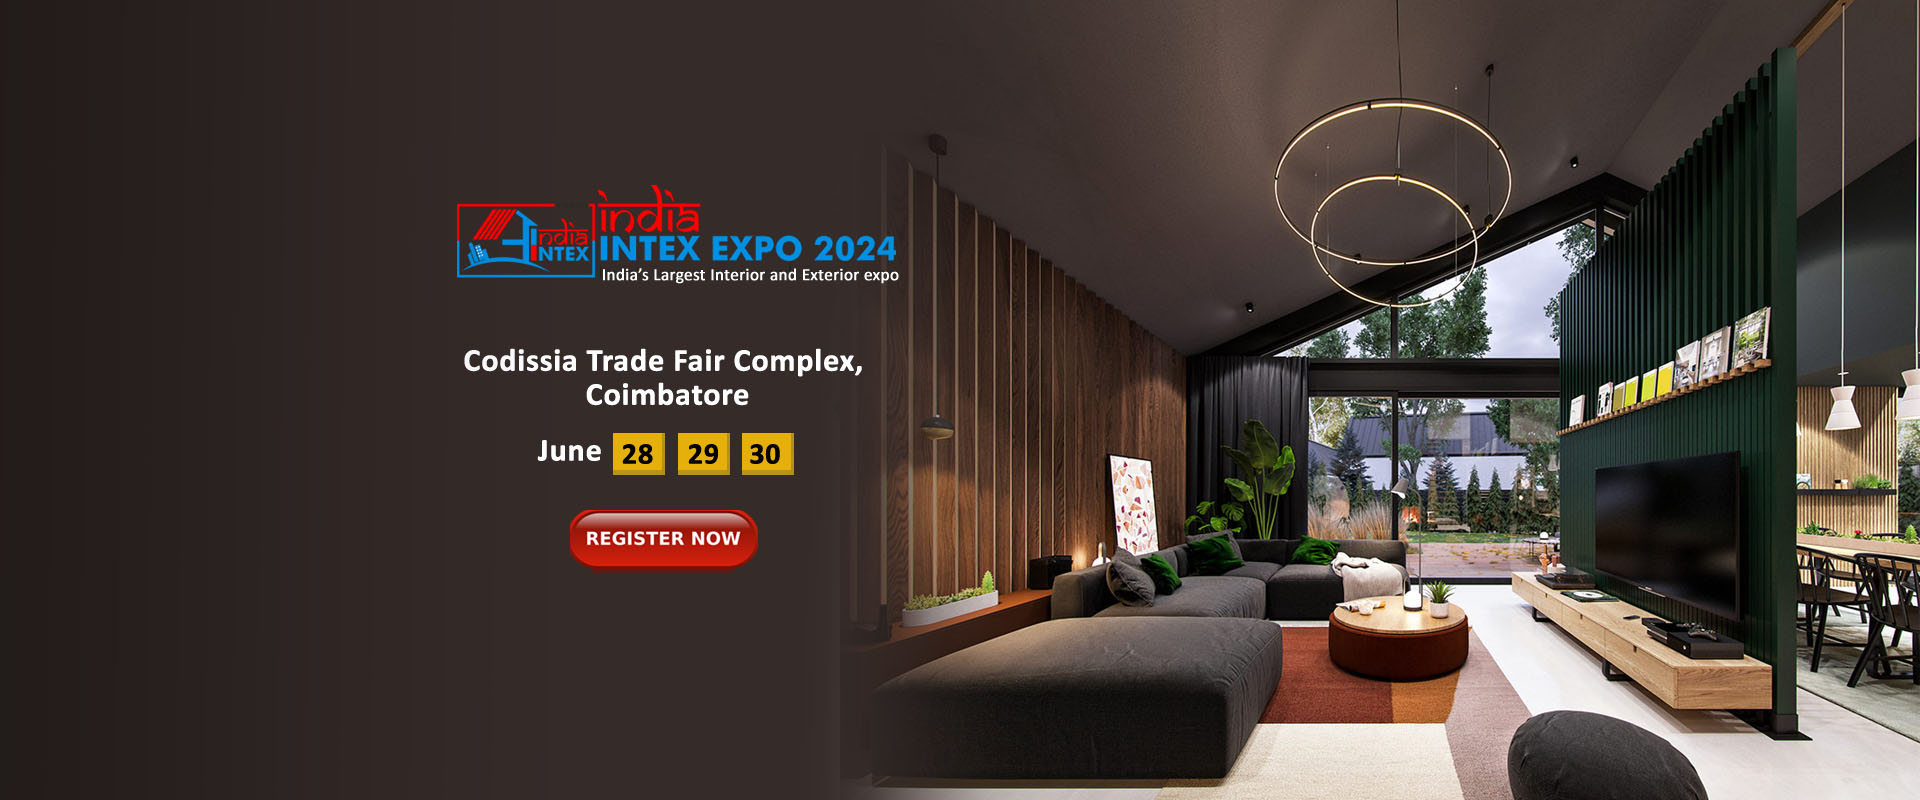 India intex expo